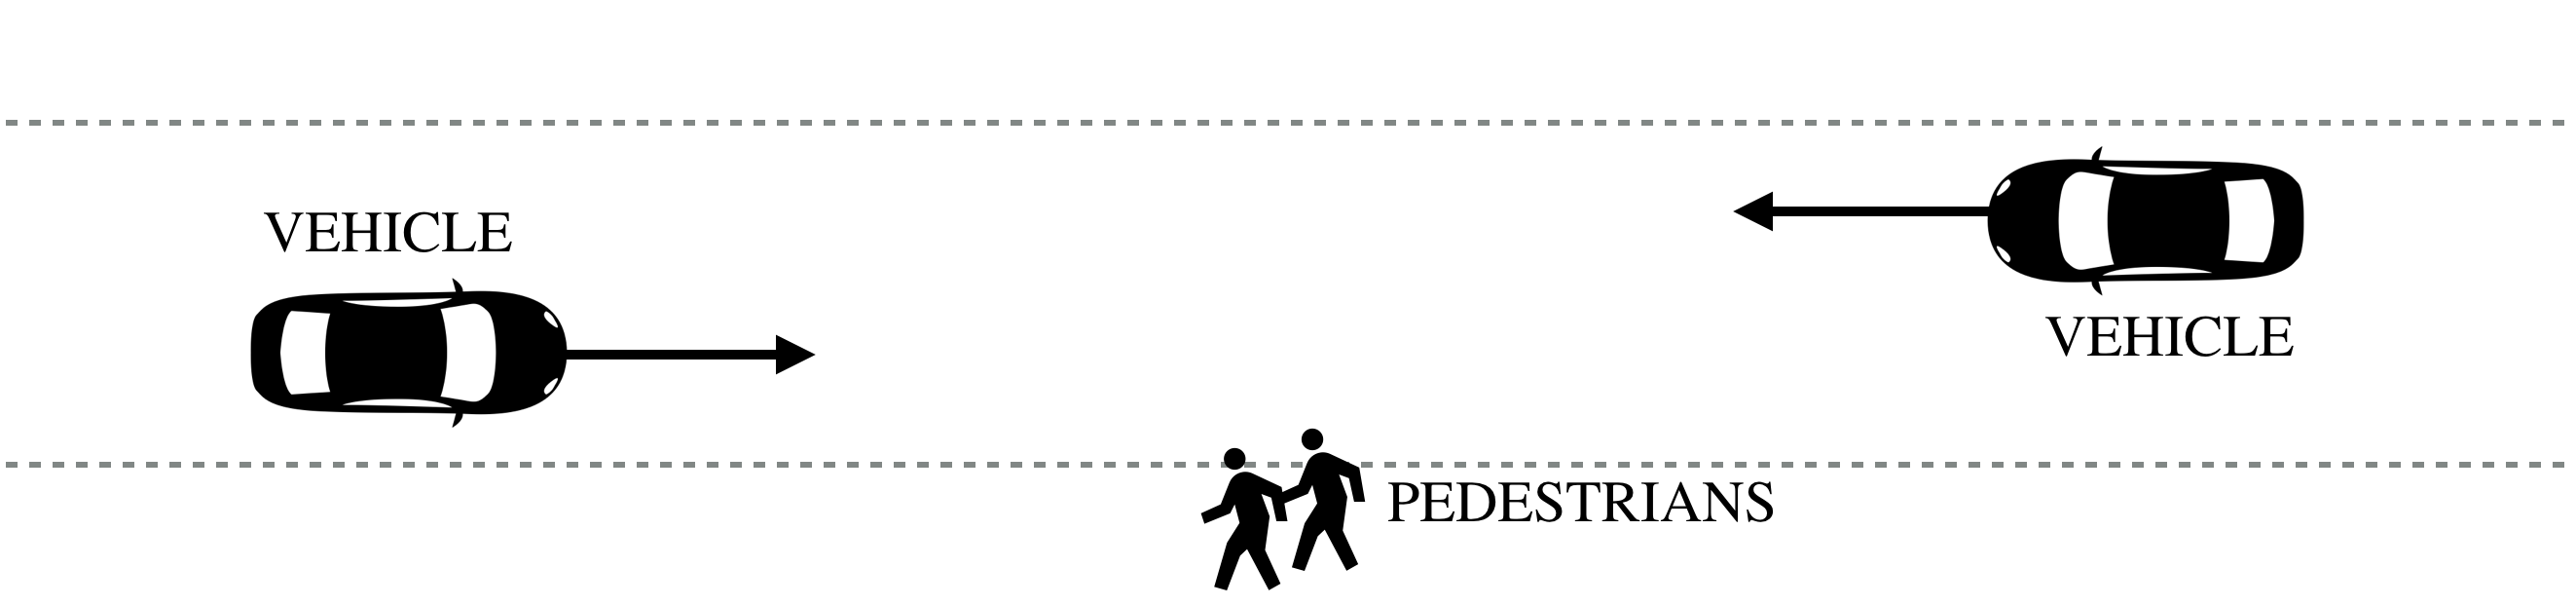 vehicles pedestrians